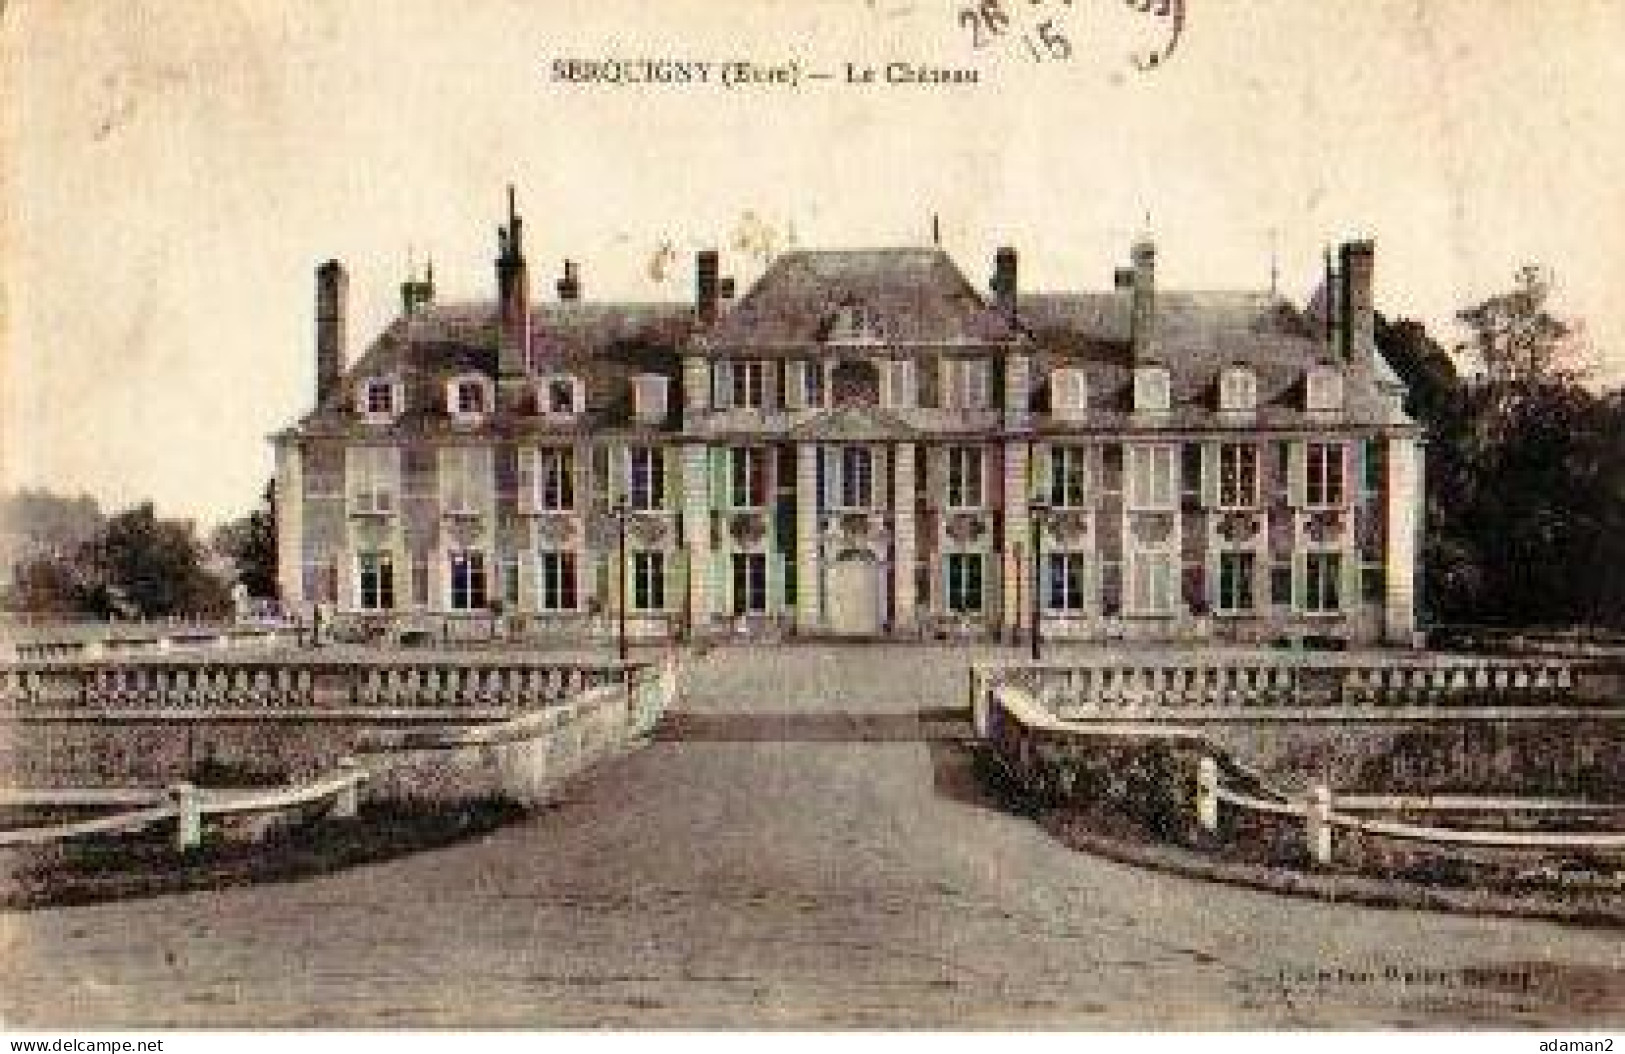 SERQUIGNY.Le Chateau - Serquigny